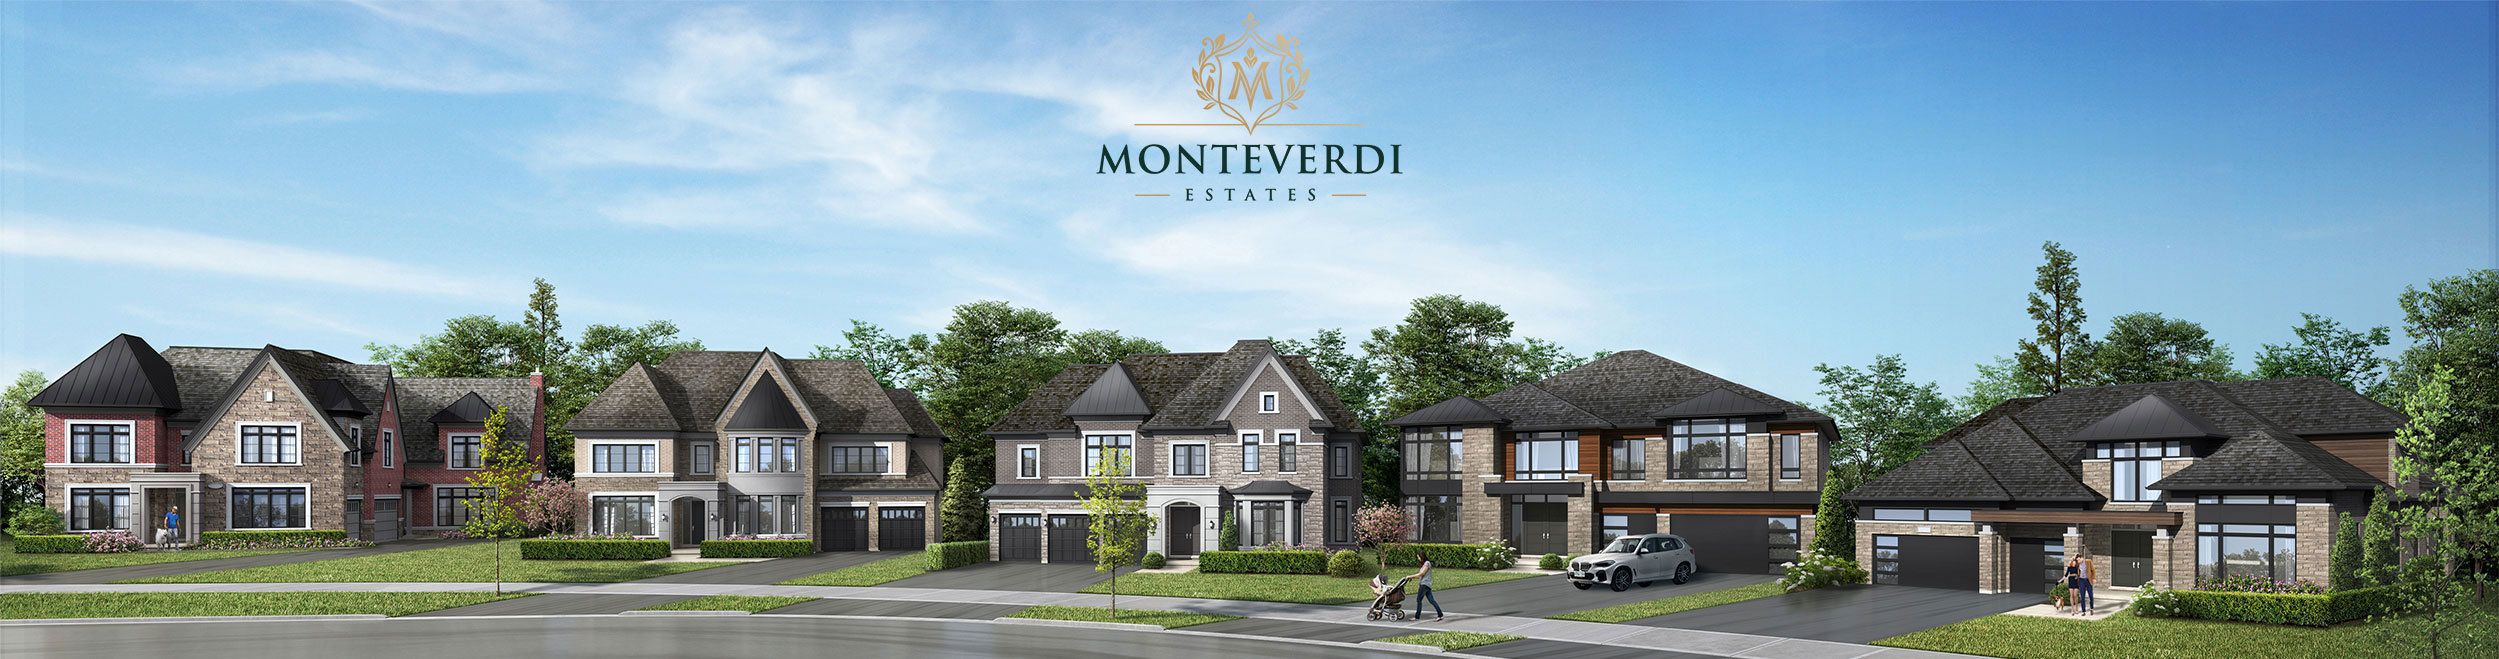 Monteverdi Estates